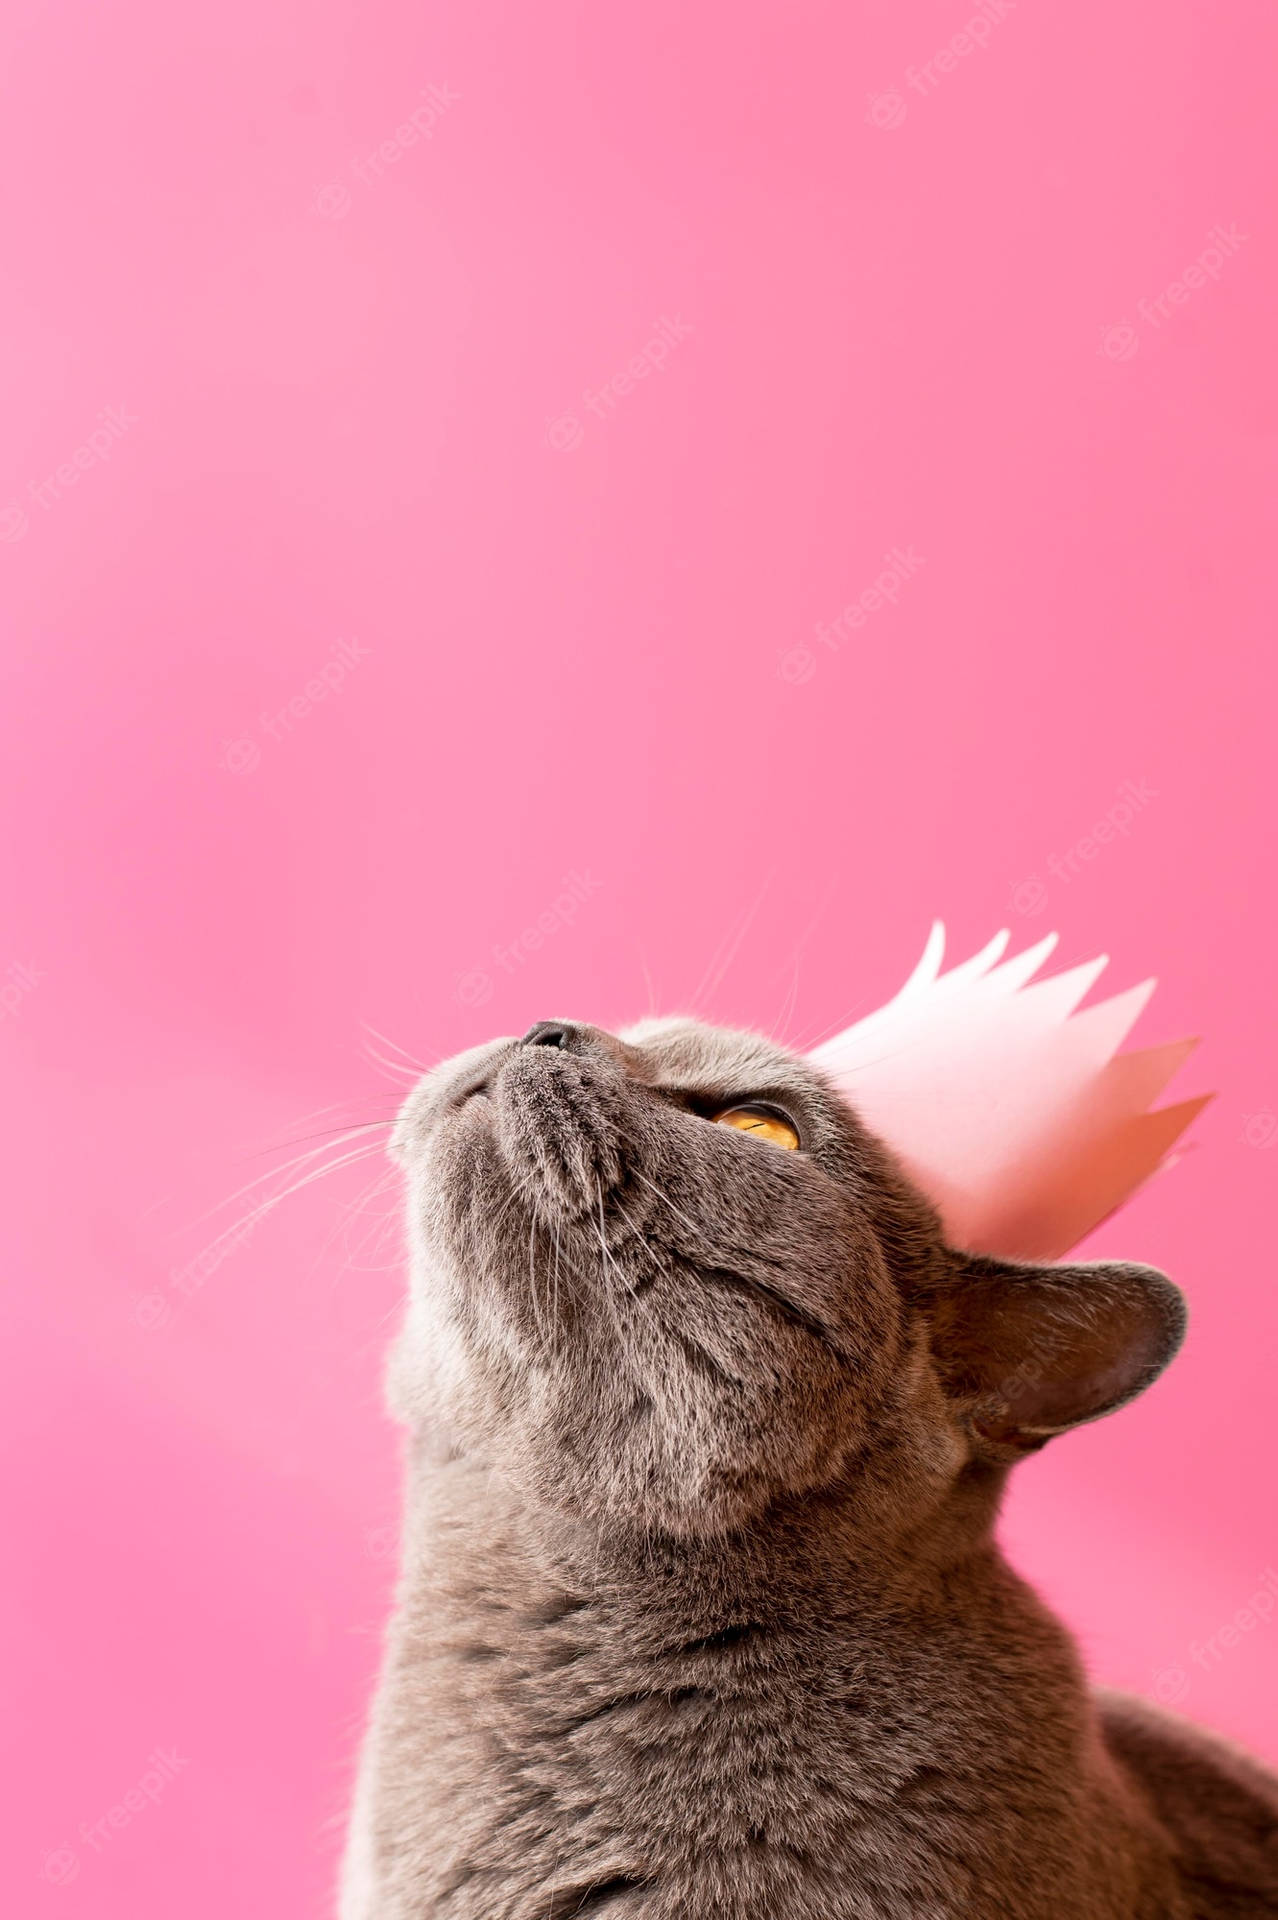 Engrå Katt Med En Rosa Krona På En Rosa Bakgrund Wallpaper